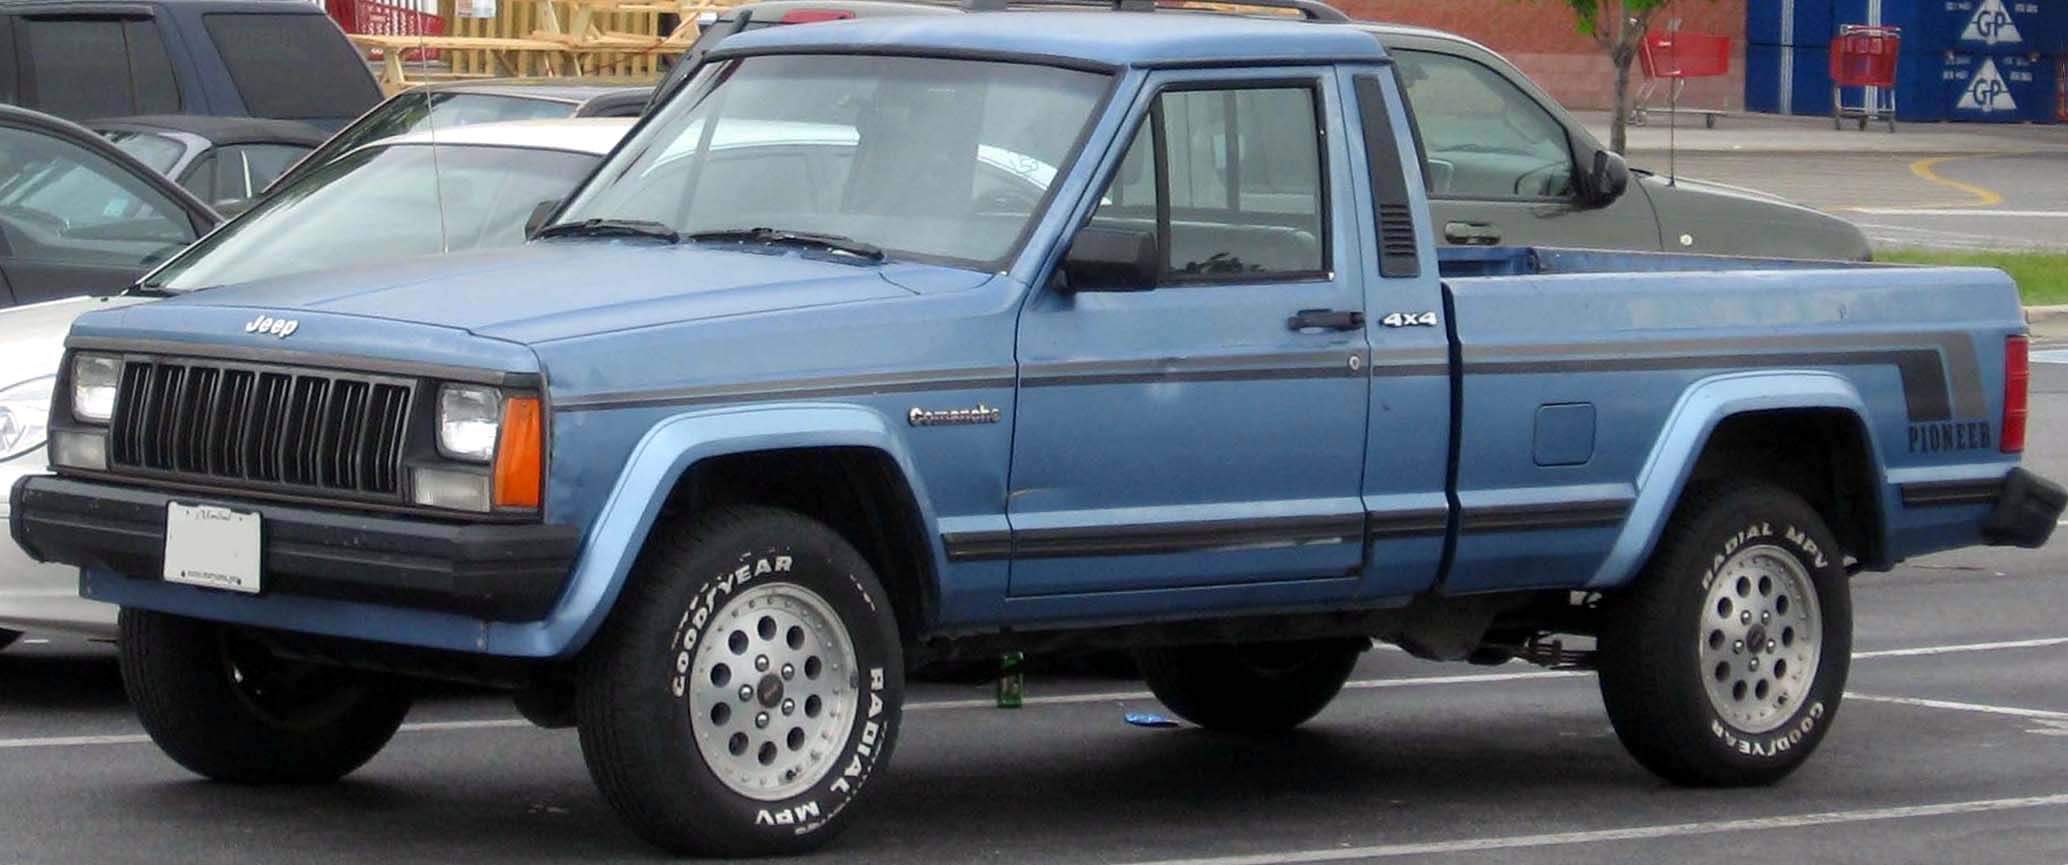 Parked blue Jeep Comanche